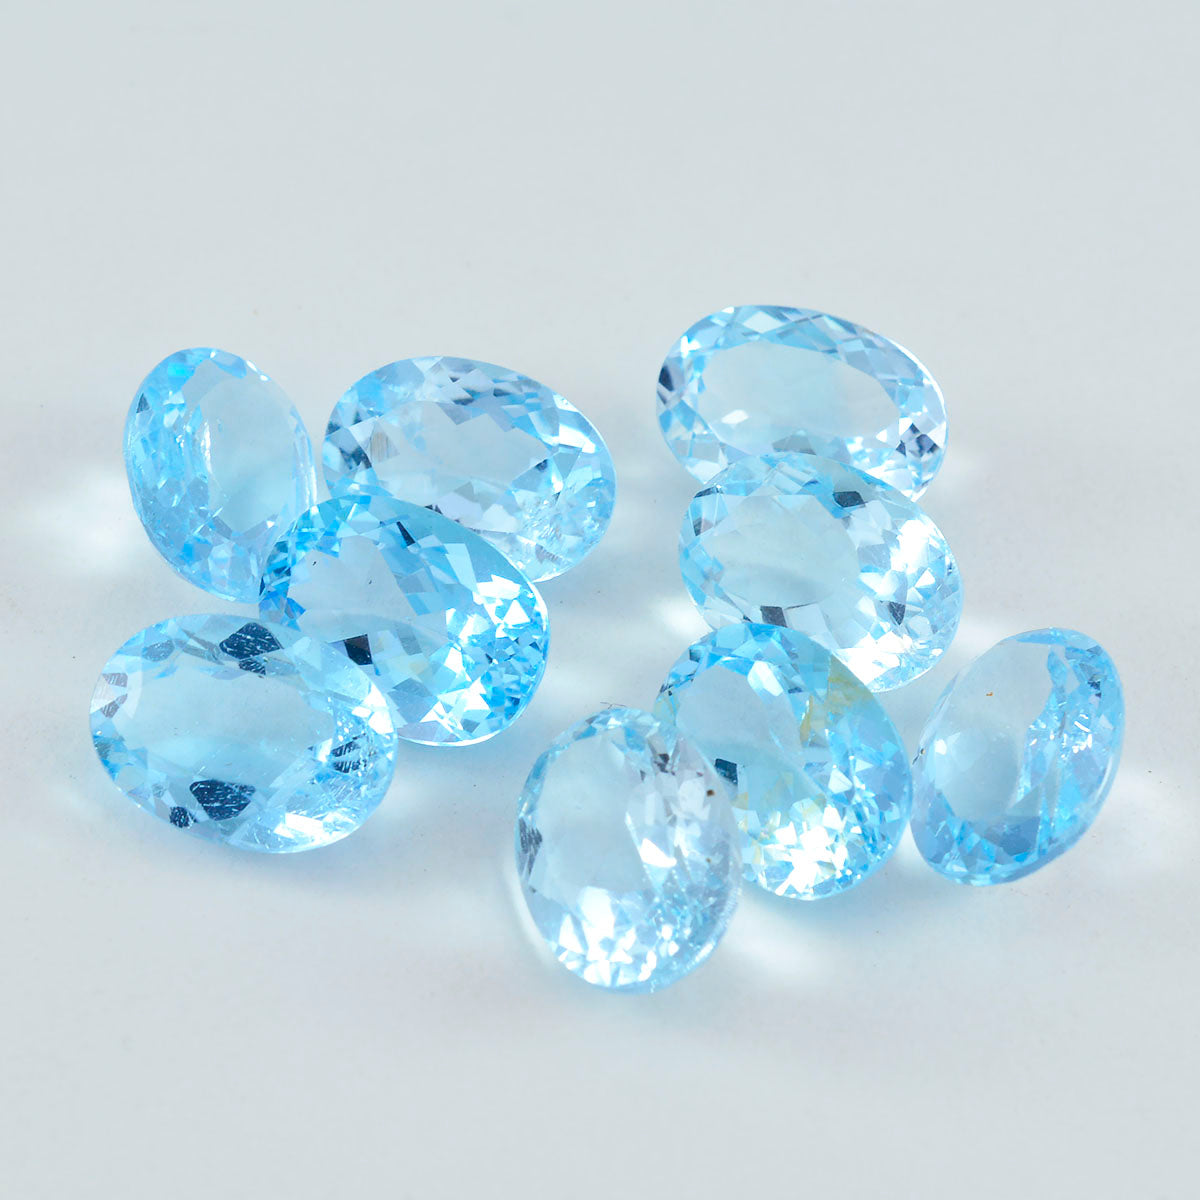 Riyogems 1PC echte blauwe topaas gefacetteerd 8x10 mm ovale vorm mooie kwaliteit losse edelstenen